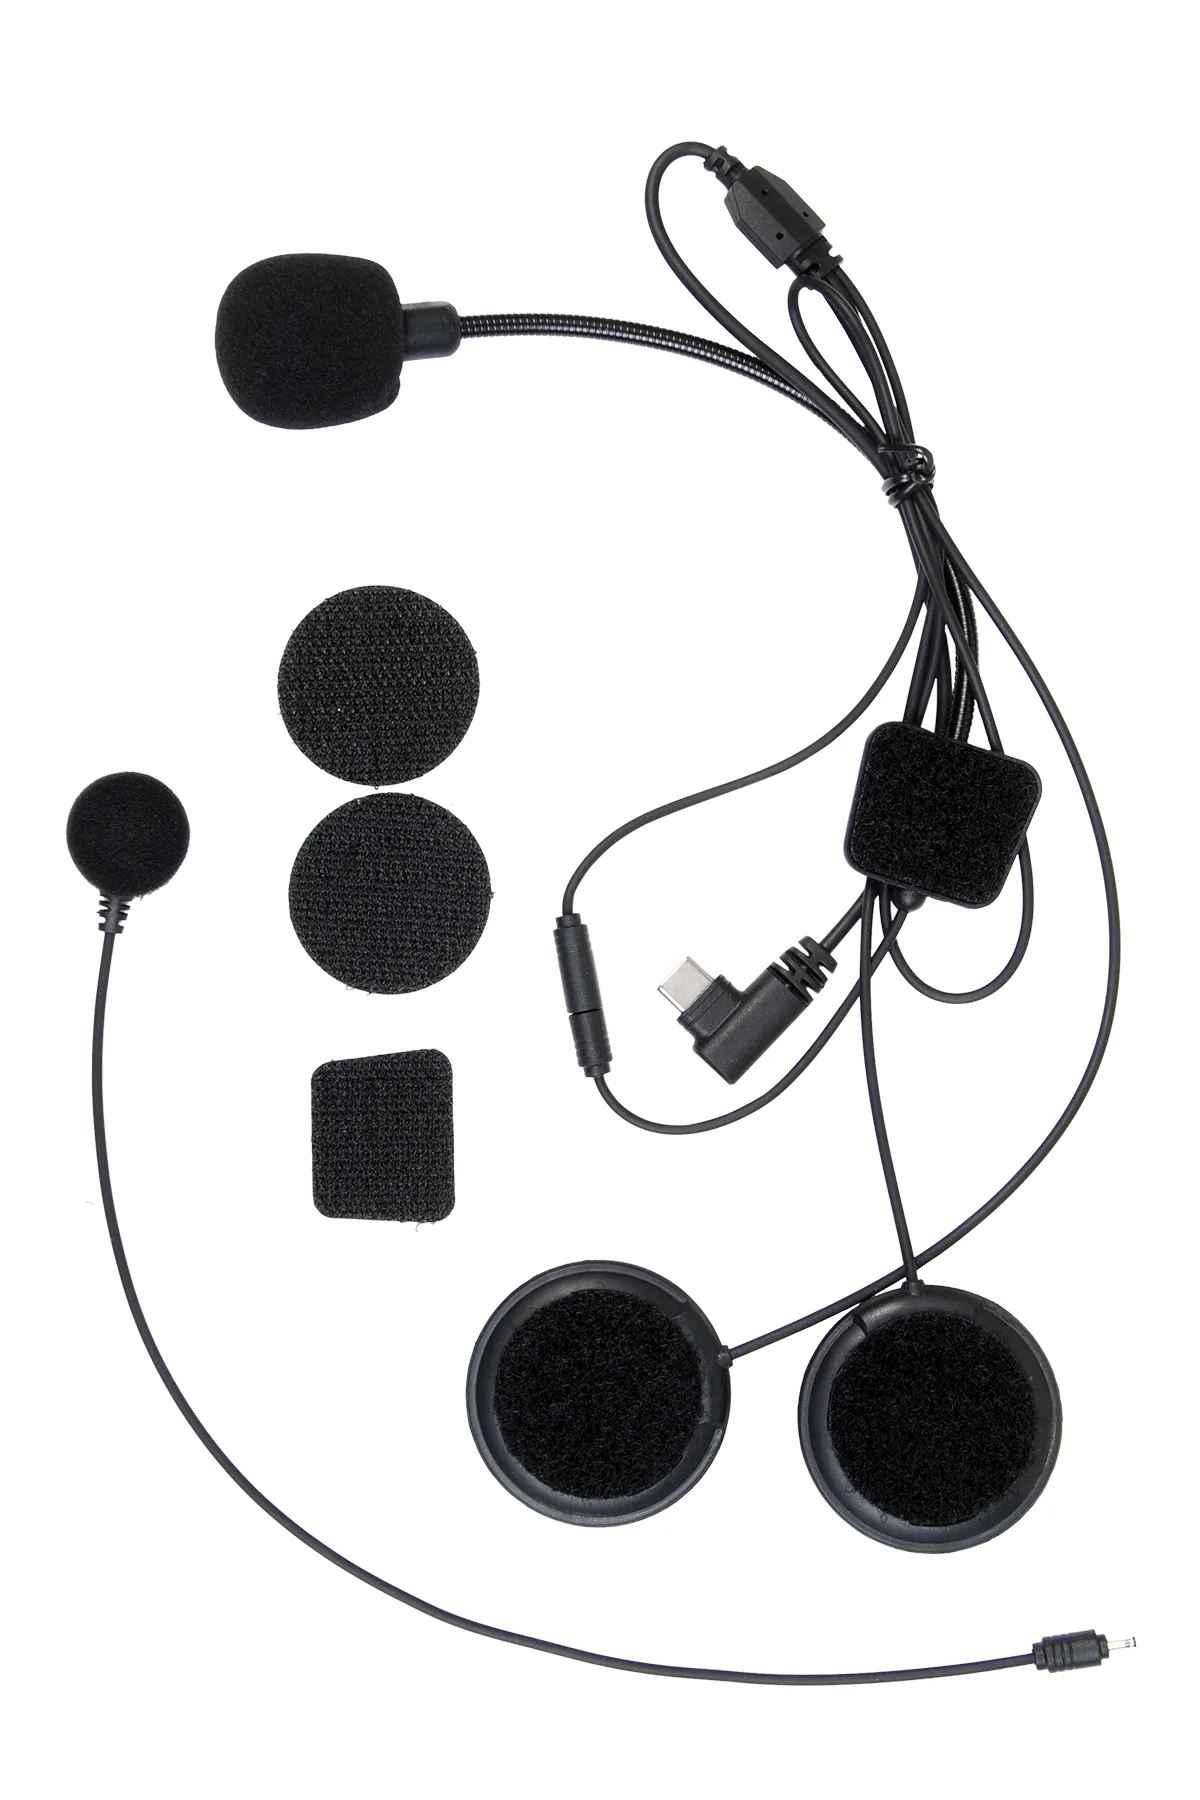 CROWN MICRO cmmk-01 Kulaklık ve Mikrofon Seti